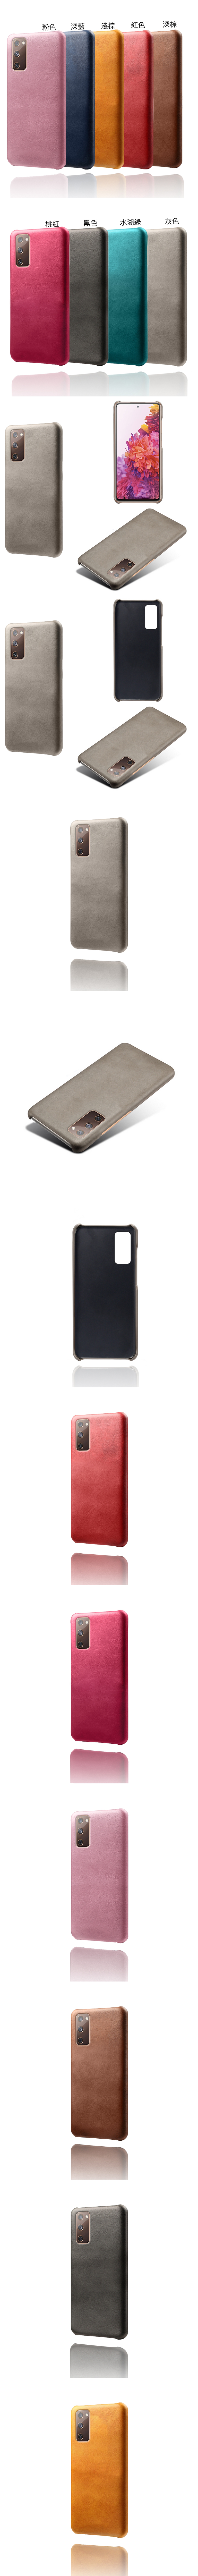 Samsung Galaxy S20 FE 皮革保護殼(PLAIN) - 牛皮仿真皮紋單色背蓋素色多色手機殼保護套手機套